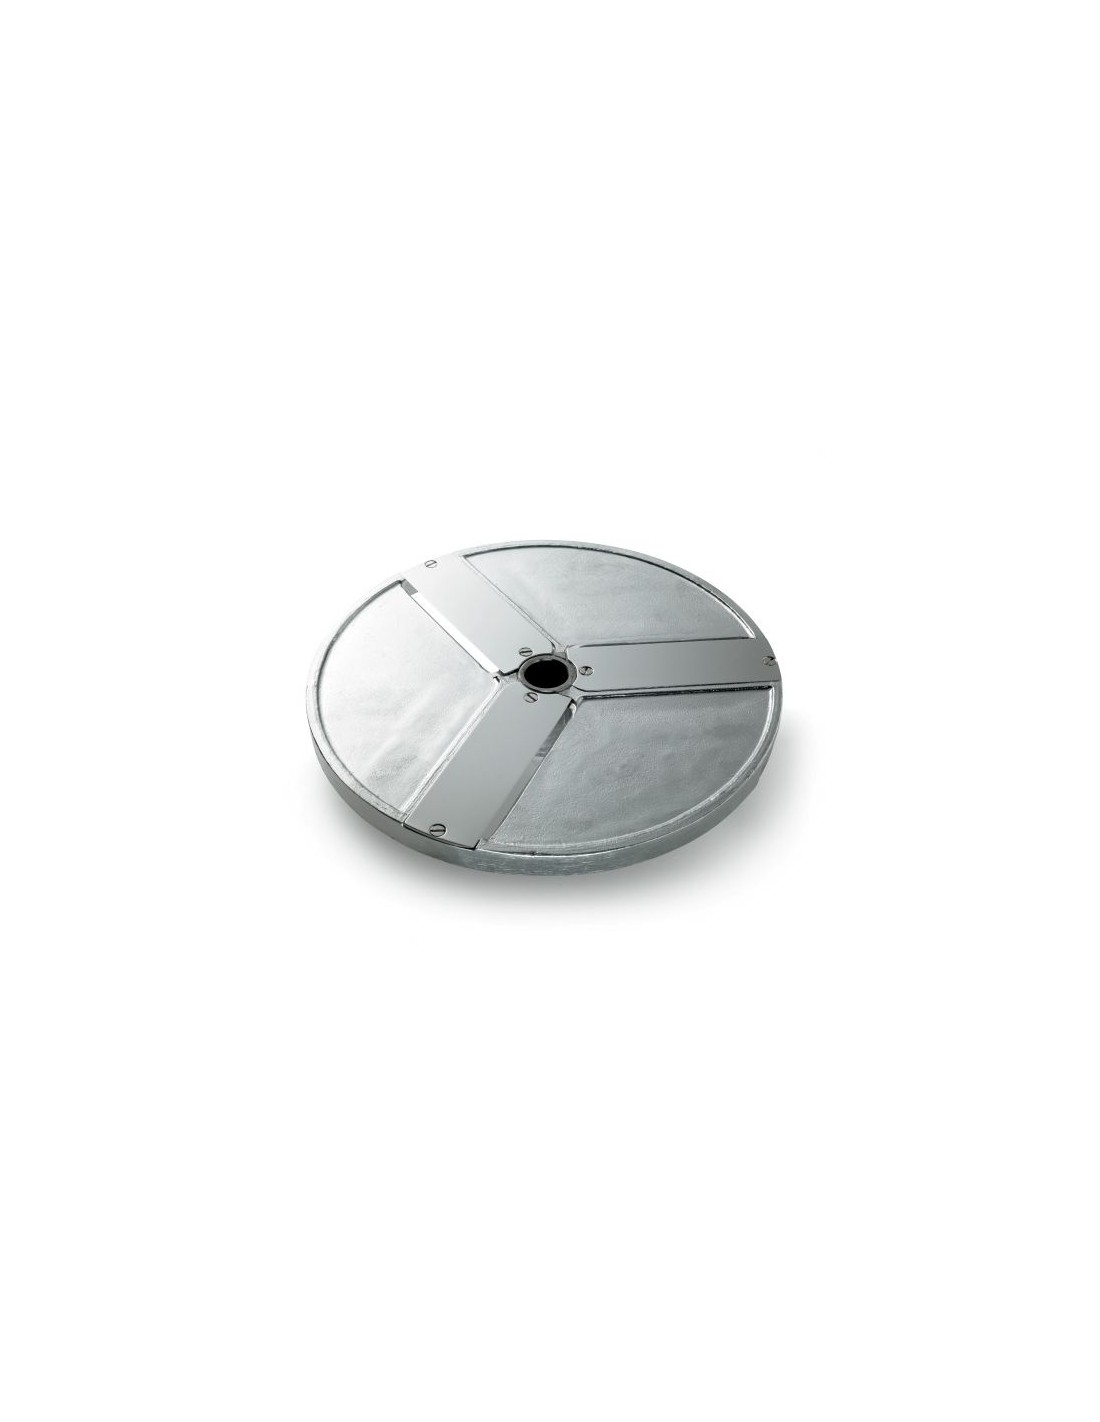 Disco per fette - Diametro mm 205 - Spessore taglio mm 80